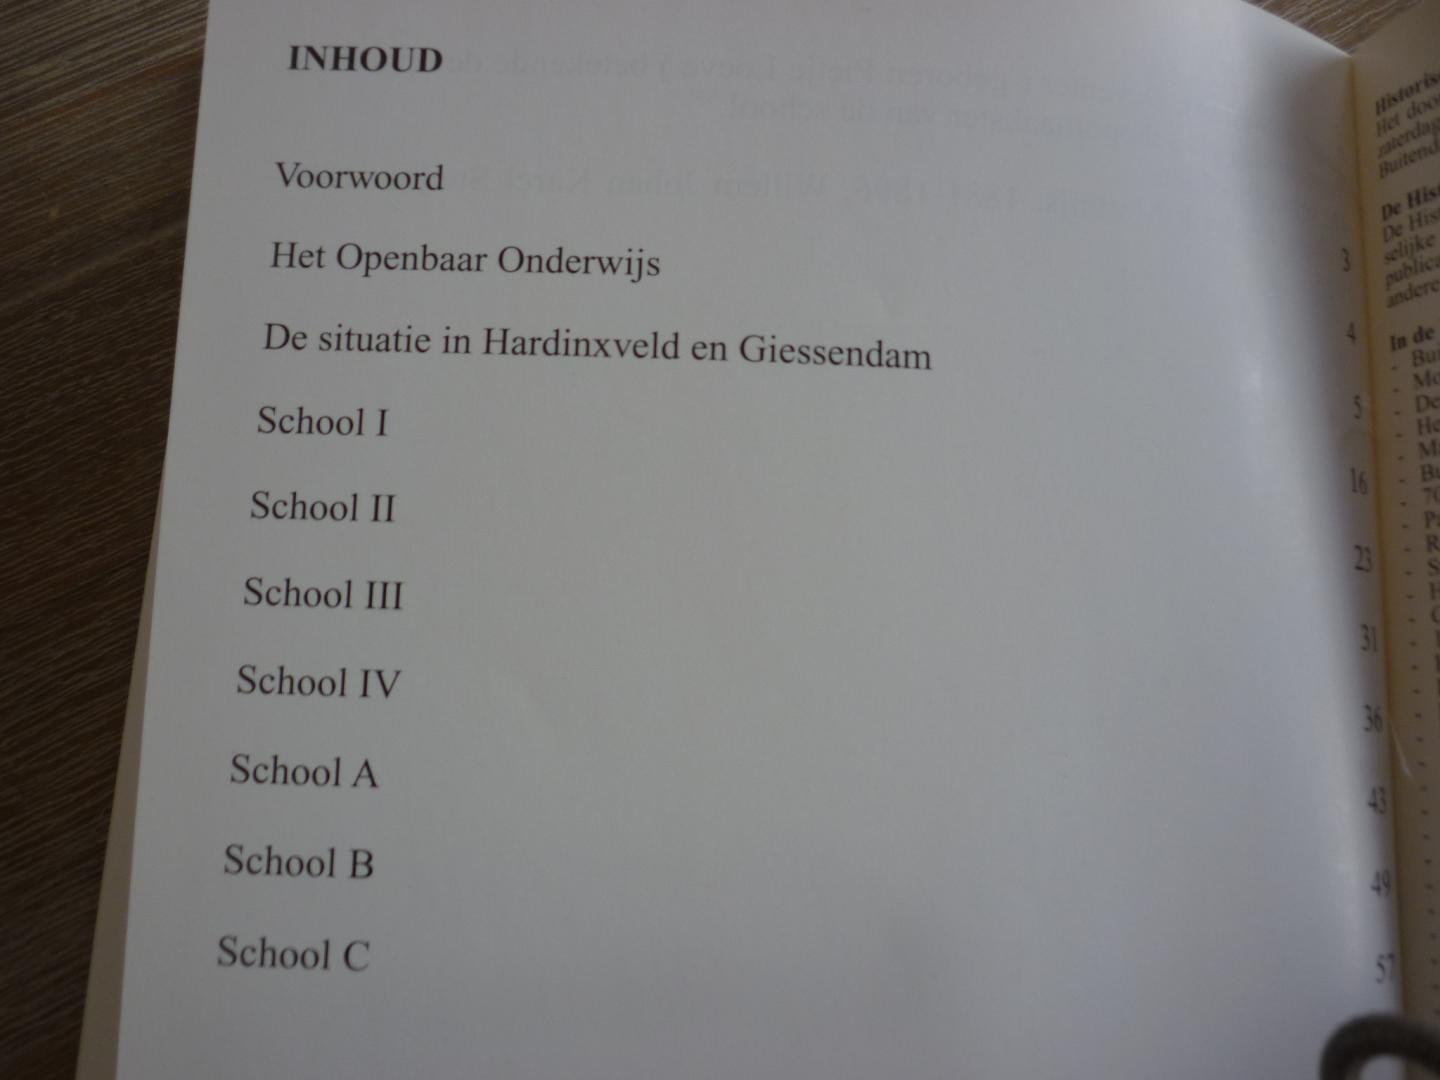 Swets, P.C. - 150 jaar openbaar onderwijs in Hardinxveld en Giessendam  -  School I, II, III, IV - School A B C  -  Publicatie 43